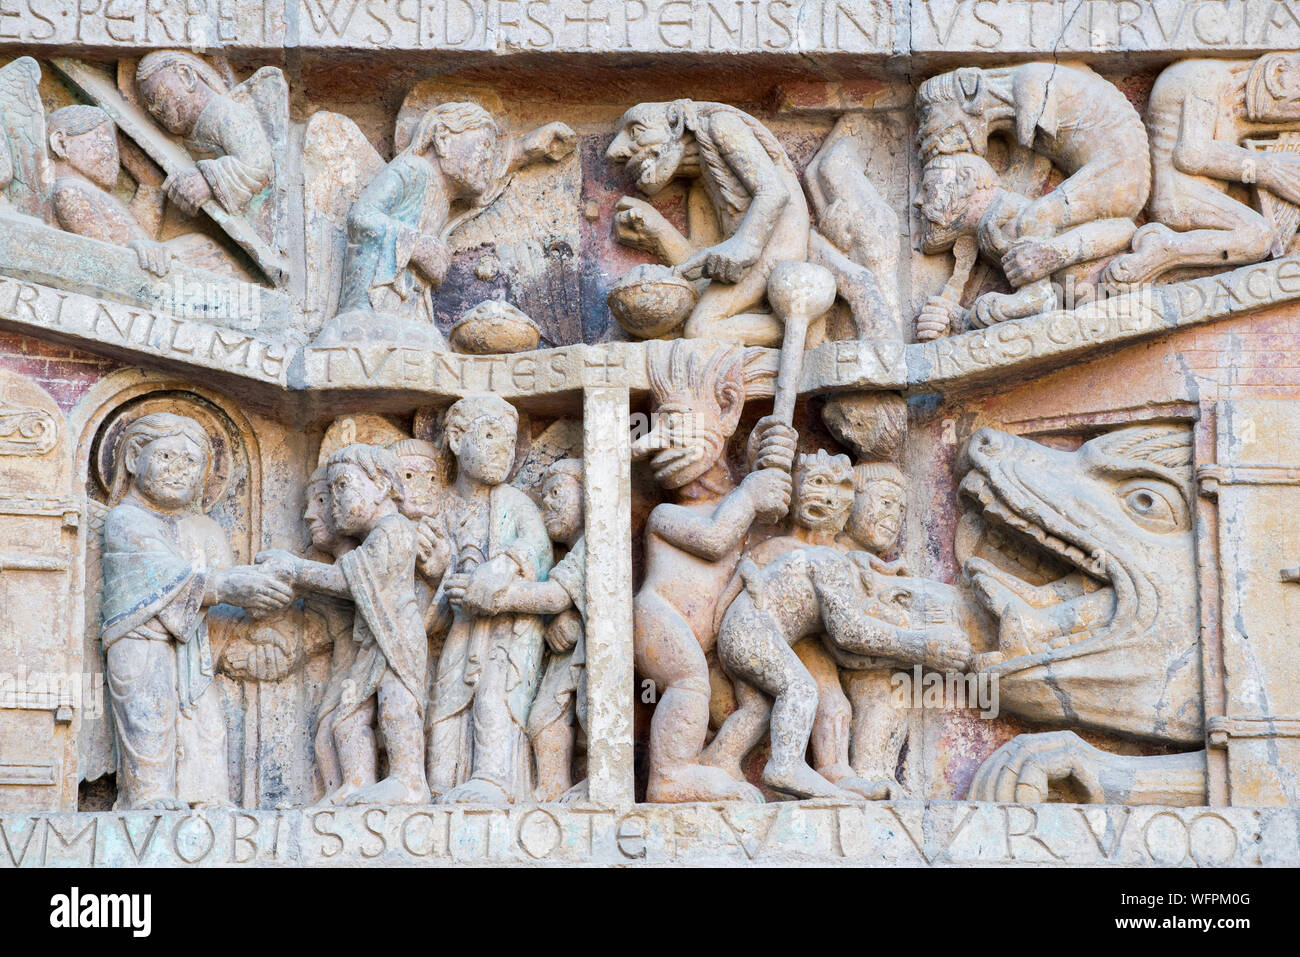 Frankreich, Aveyron, Conques, den schönsten Dörfern von Frankreich gekennzeichnet, romanische Abtei von Saint Foy aus dem 11. Jahrhundert, ein UNESCO Weltkulturerbe, Tympanon des Jüngsten Gerichts Stockfoto